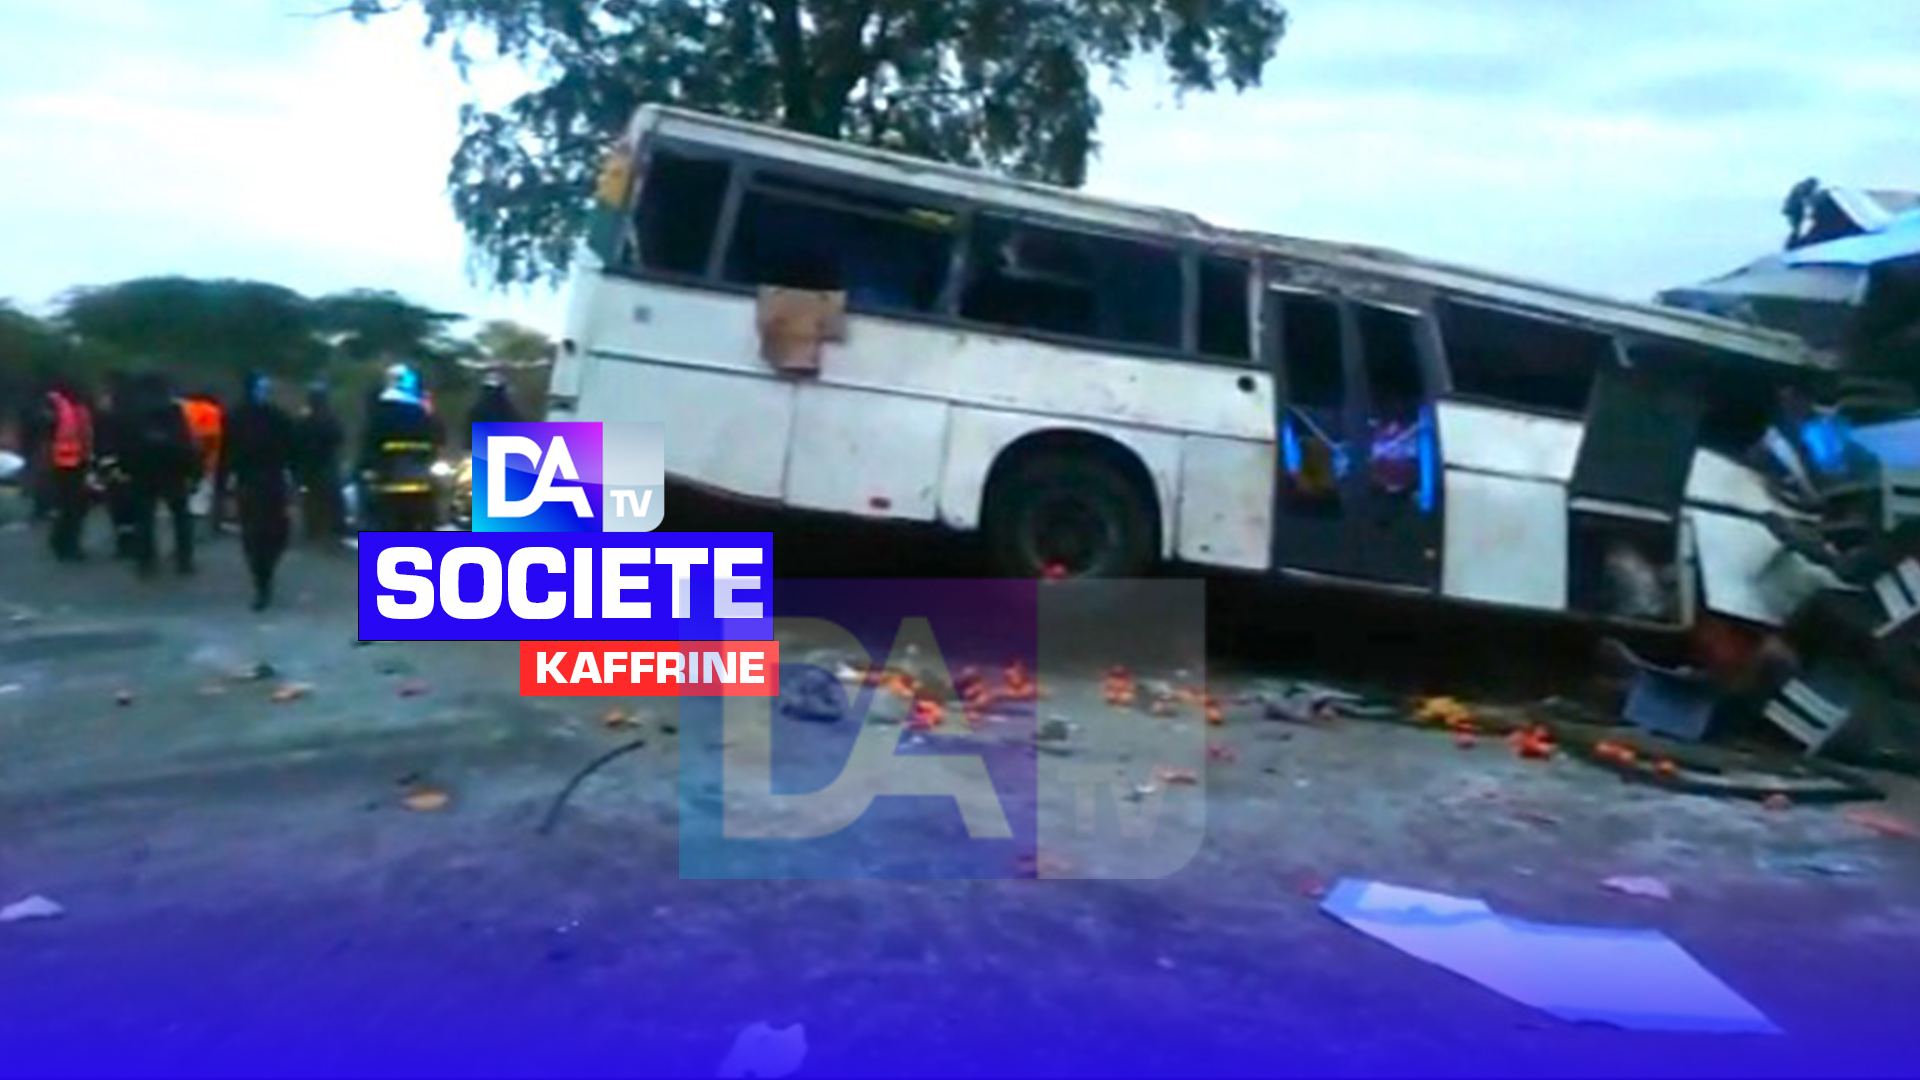 39 morts et 78 blessés dans un accident de la circulation à Kaffrine : Le parquet s’incline devant la mémoire des personnes décédées.